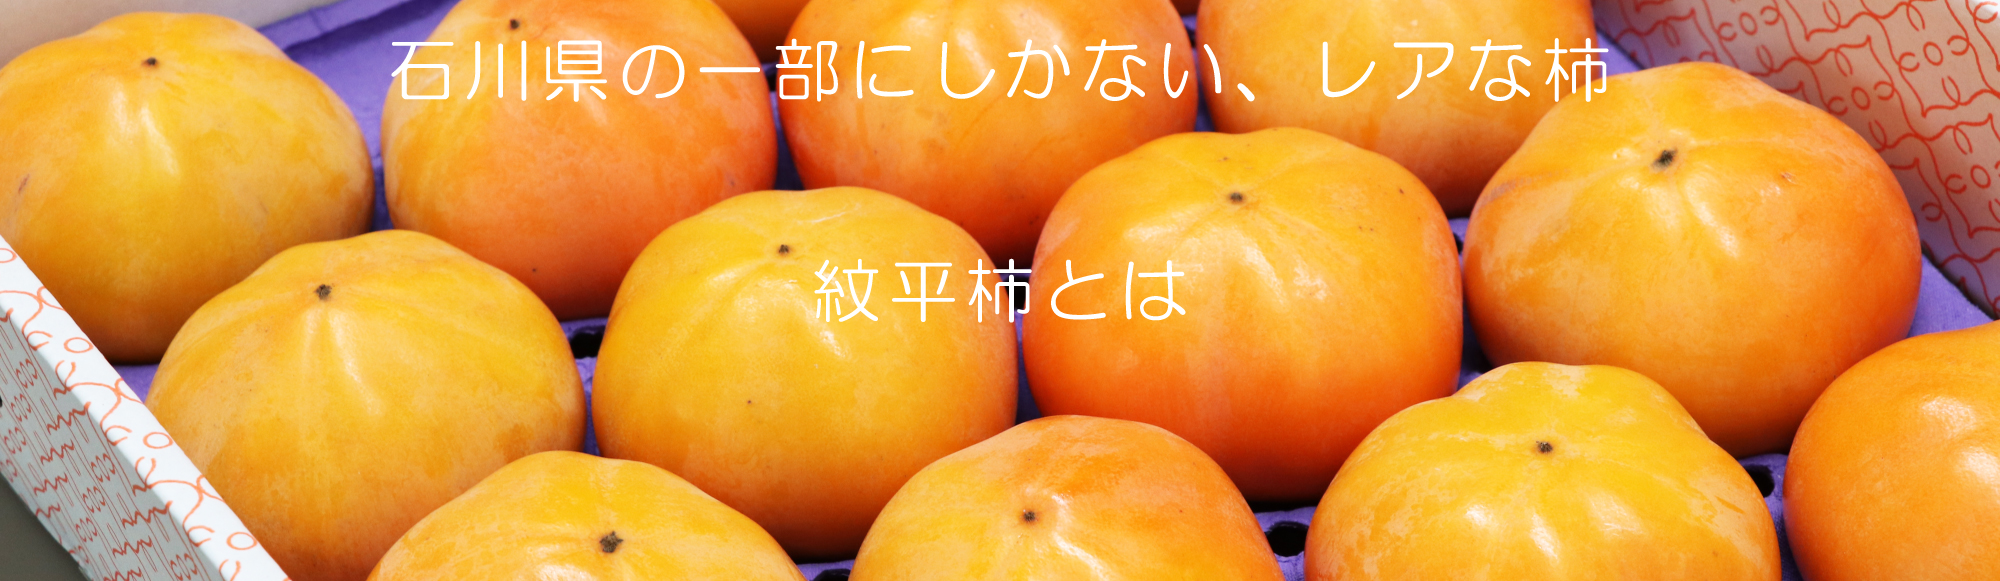 紋平柿とは